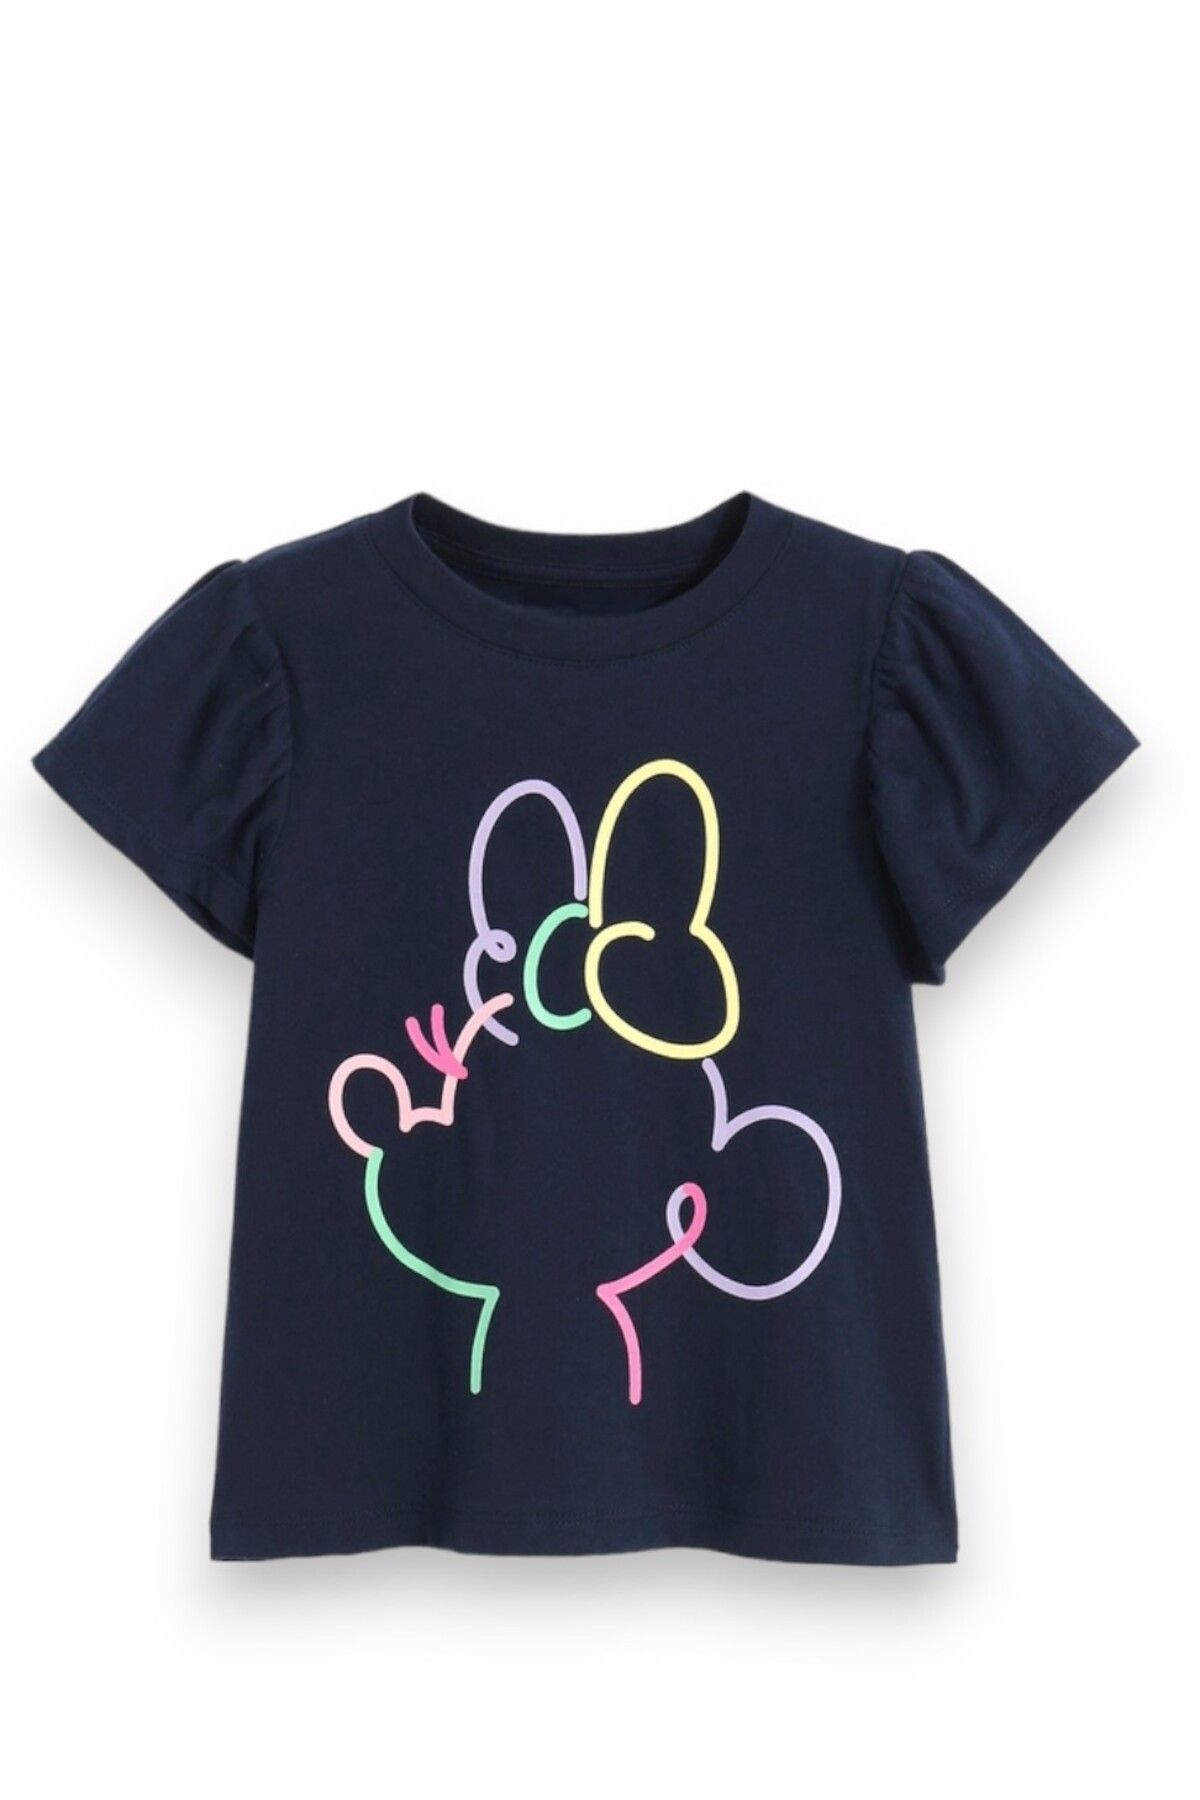 Lolliboomkids Yeni Sezon Koyu Lacivert Üzeri Renkli Baskı Çizgi Graffiti Mickey Minnie Baskılı T-Shirt